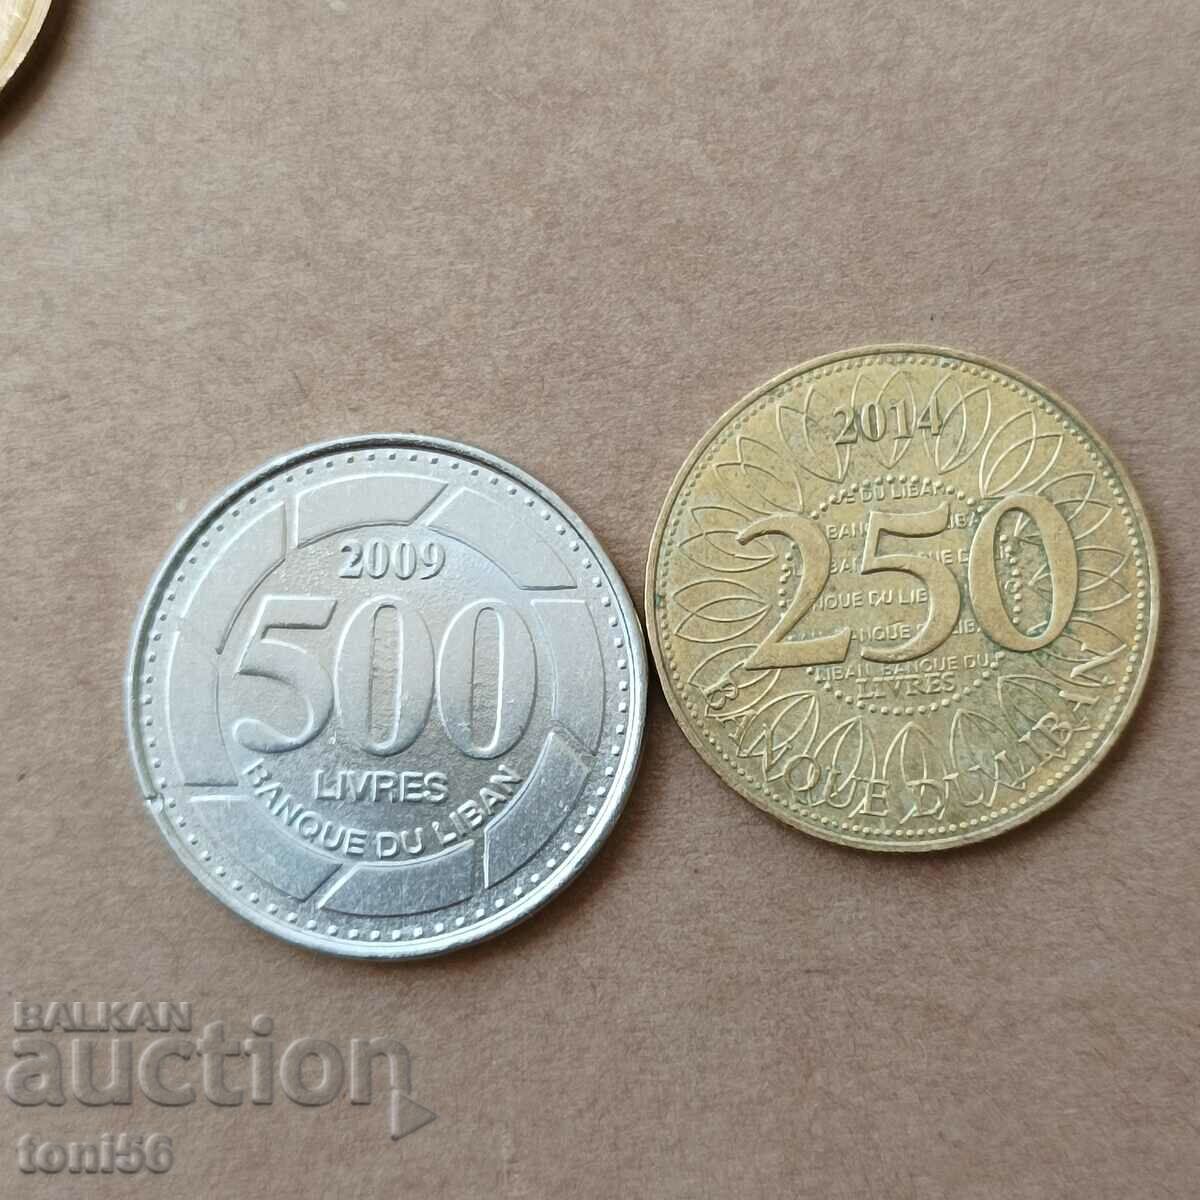 Λίβανος 250 + 500 λιβρές 2009/14 UNC